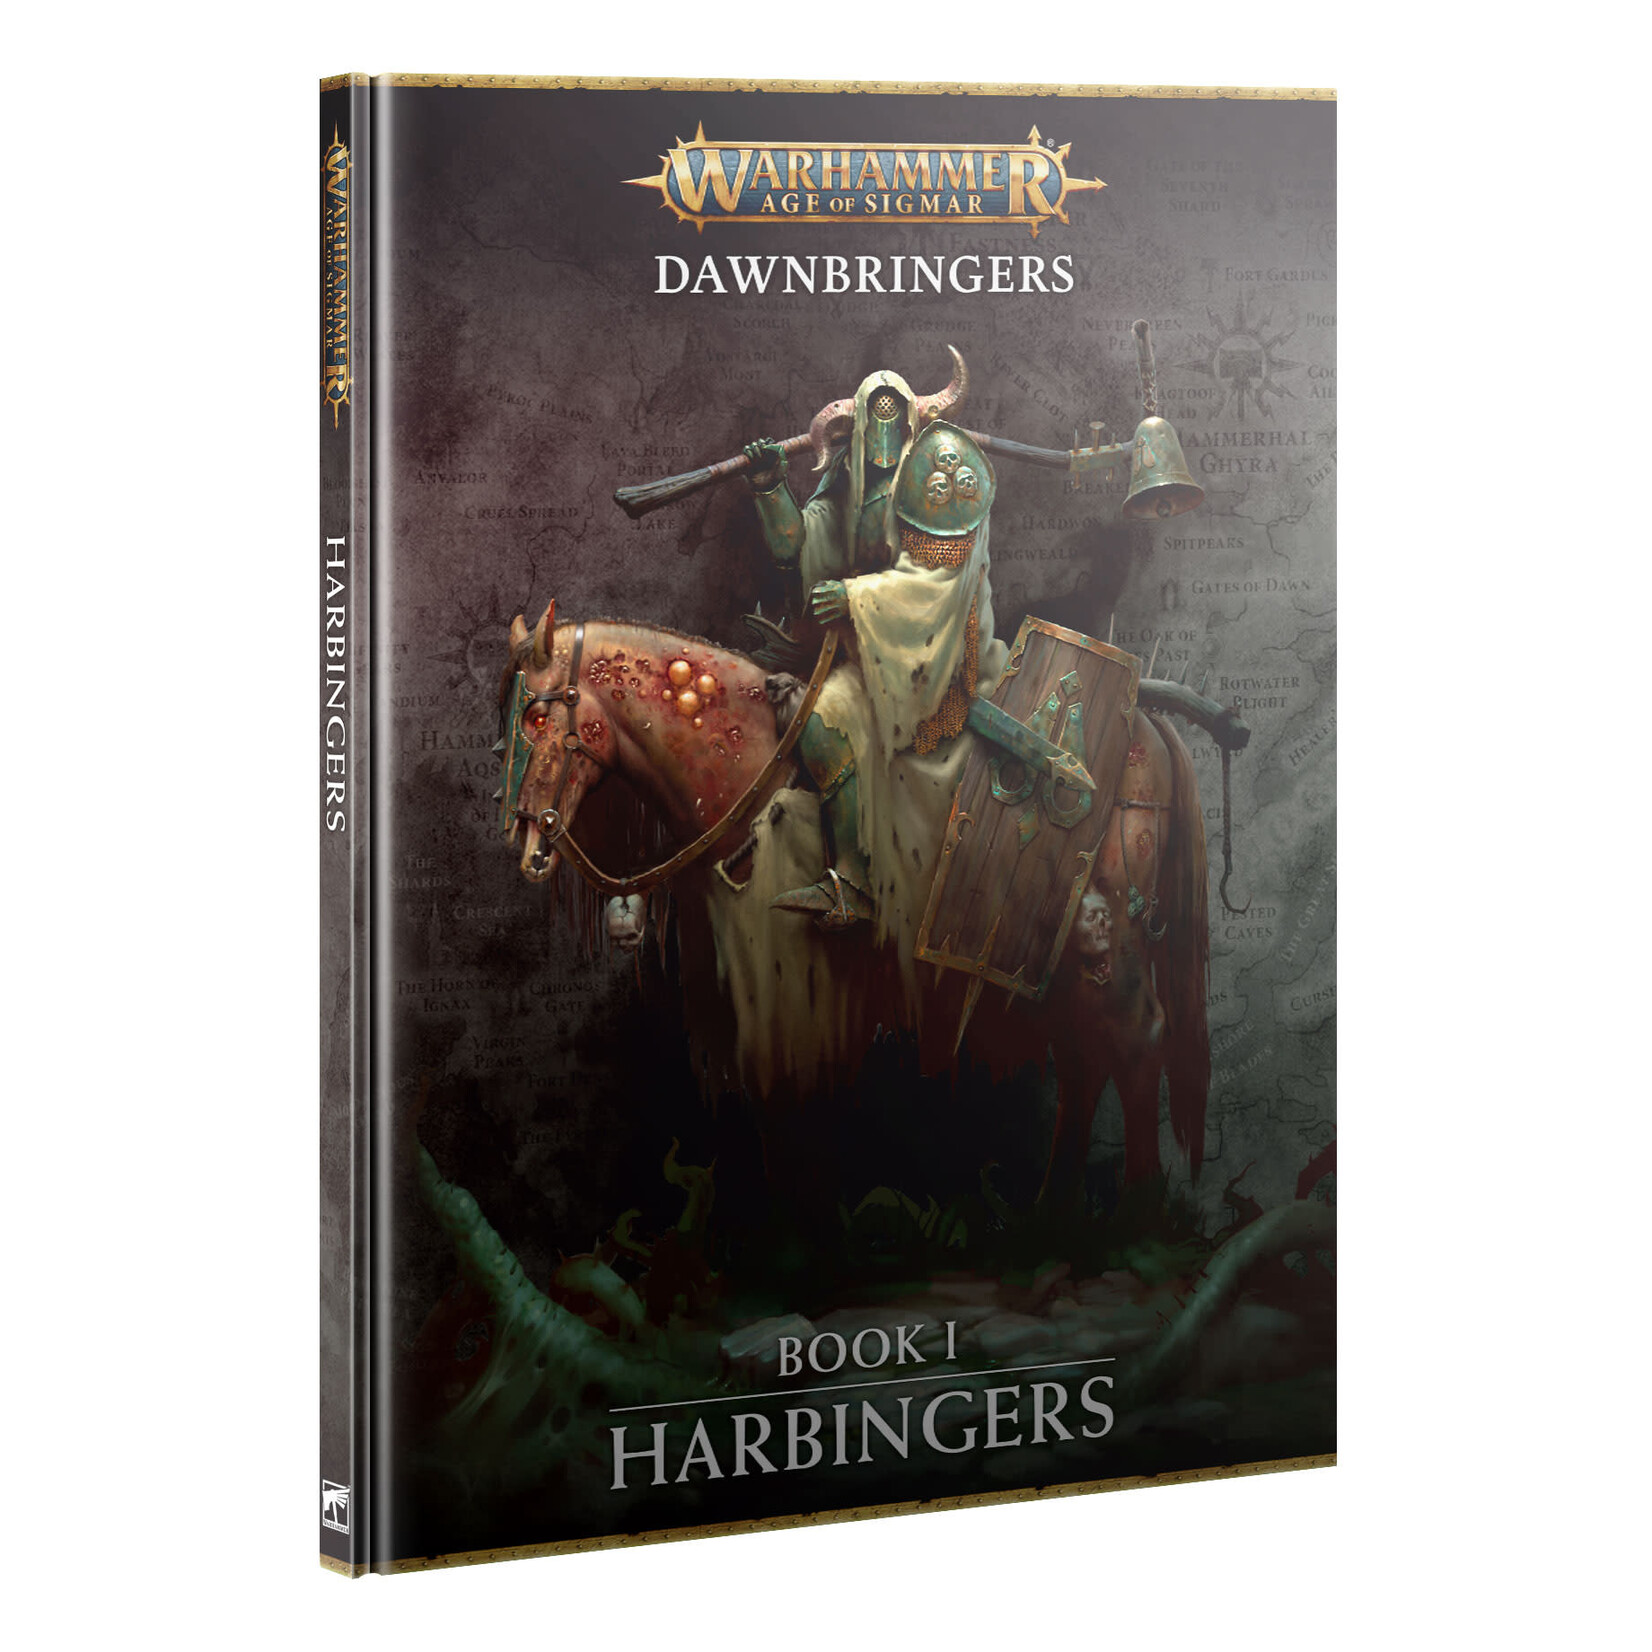 Games Workshop Warhammer Age of Sigmar: Dawnbringers: Book 1-Harbingers